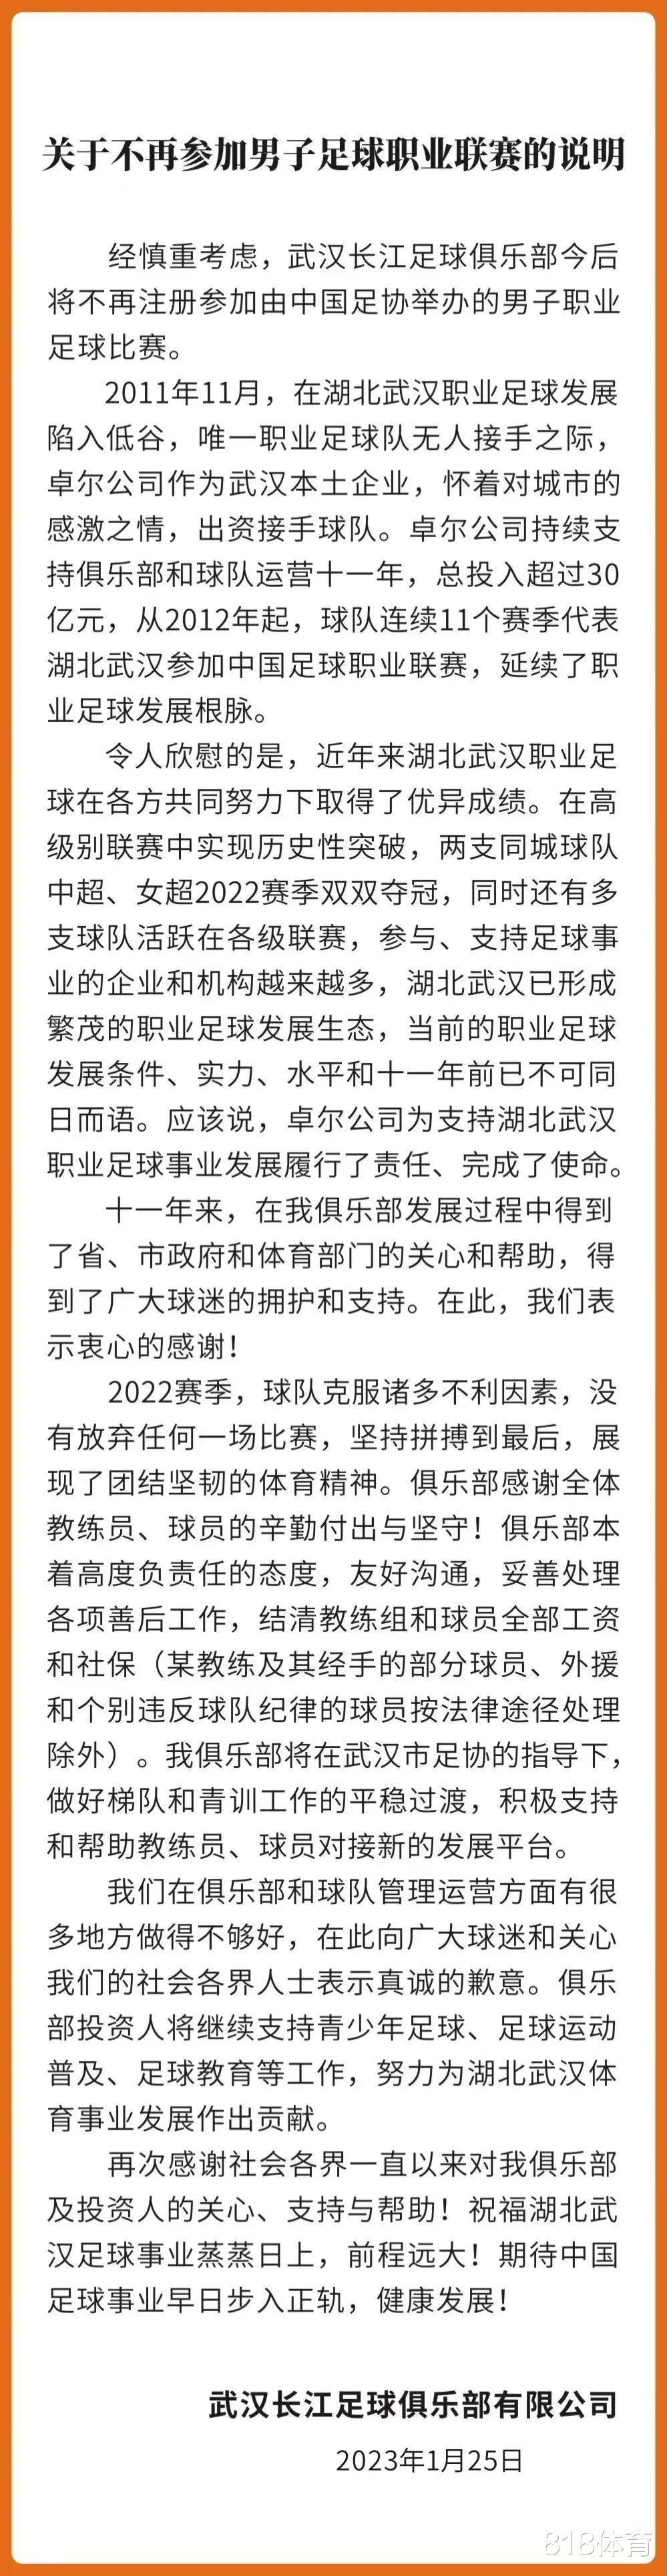 恩断义绝! 武汉长江宣布解散, 将结清李铁及其经手球员之外人员工资(2)